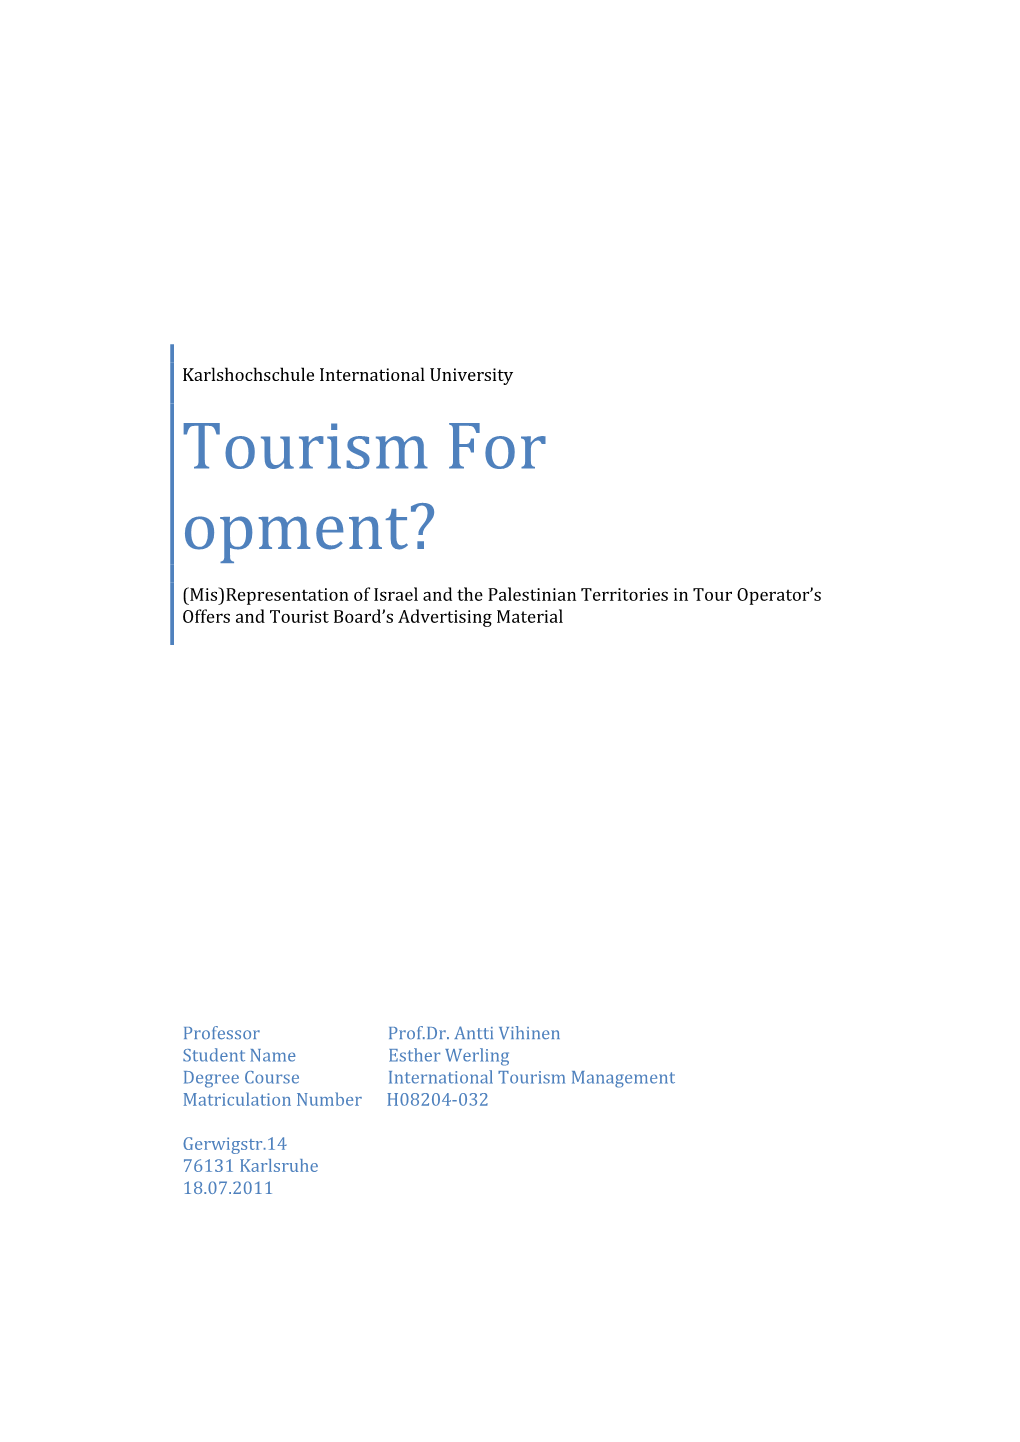 Tourism for Development?